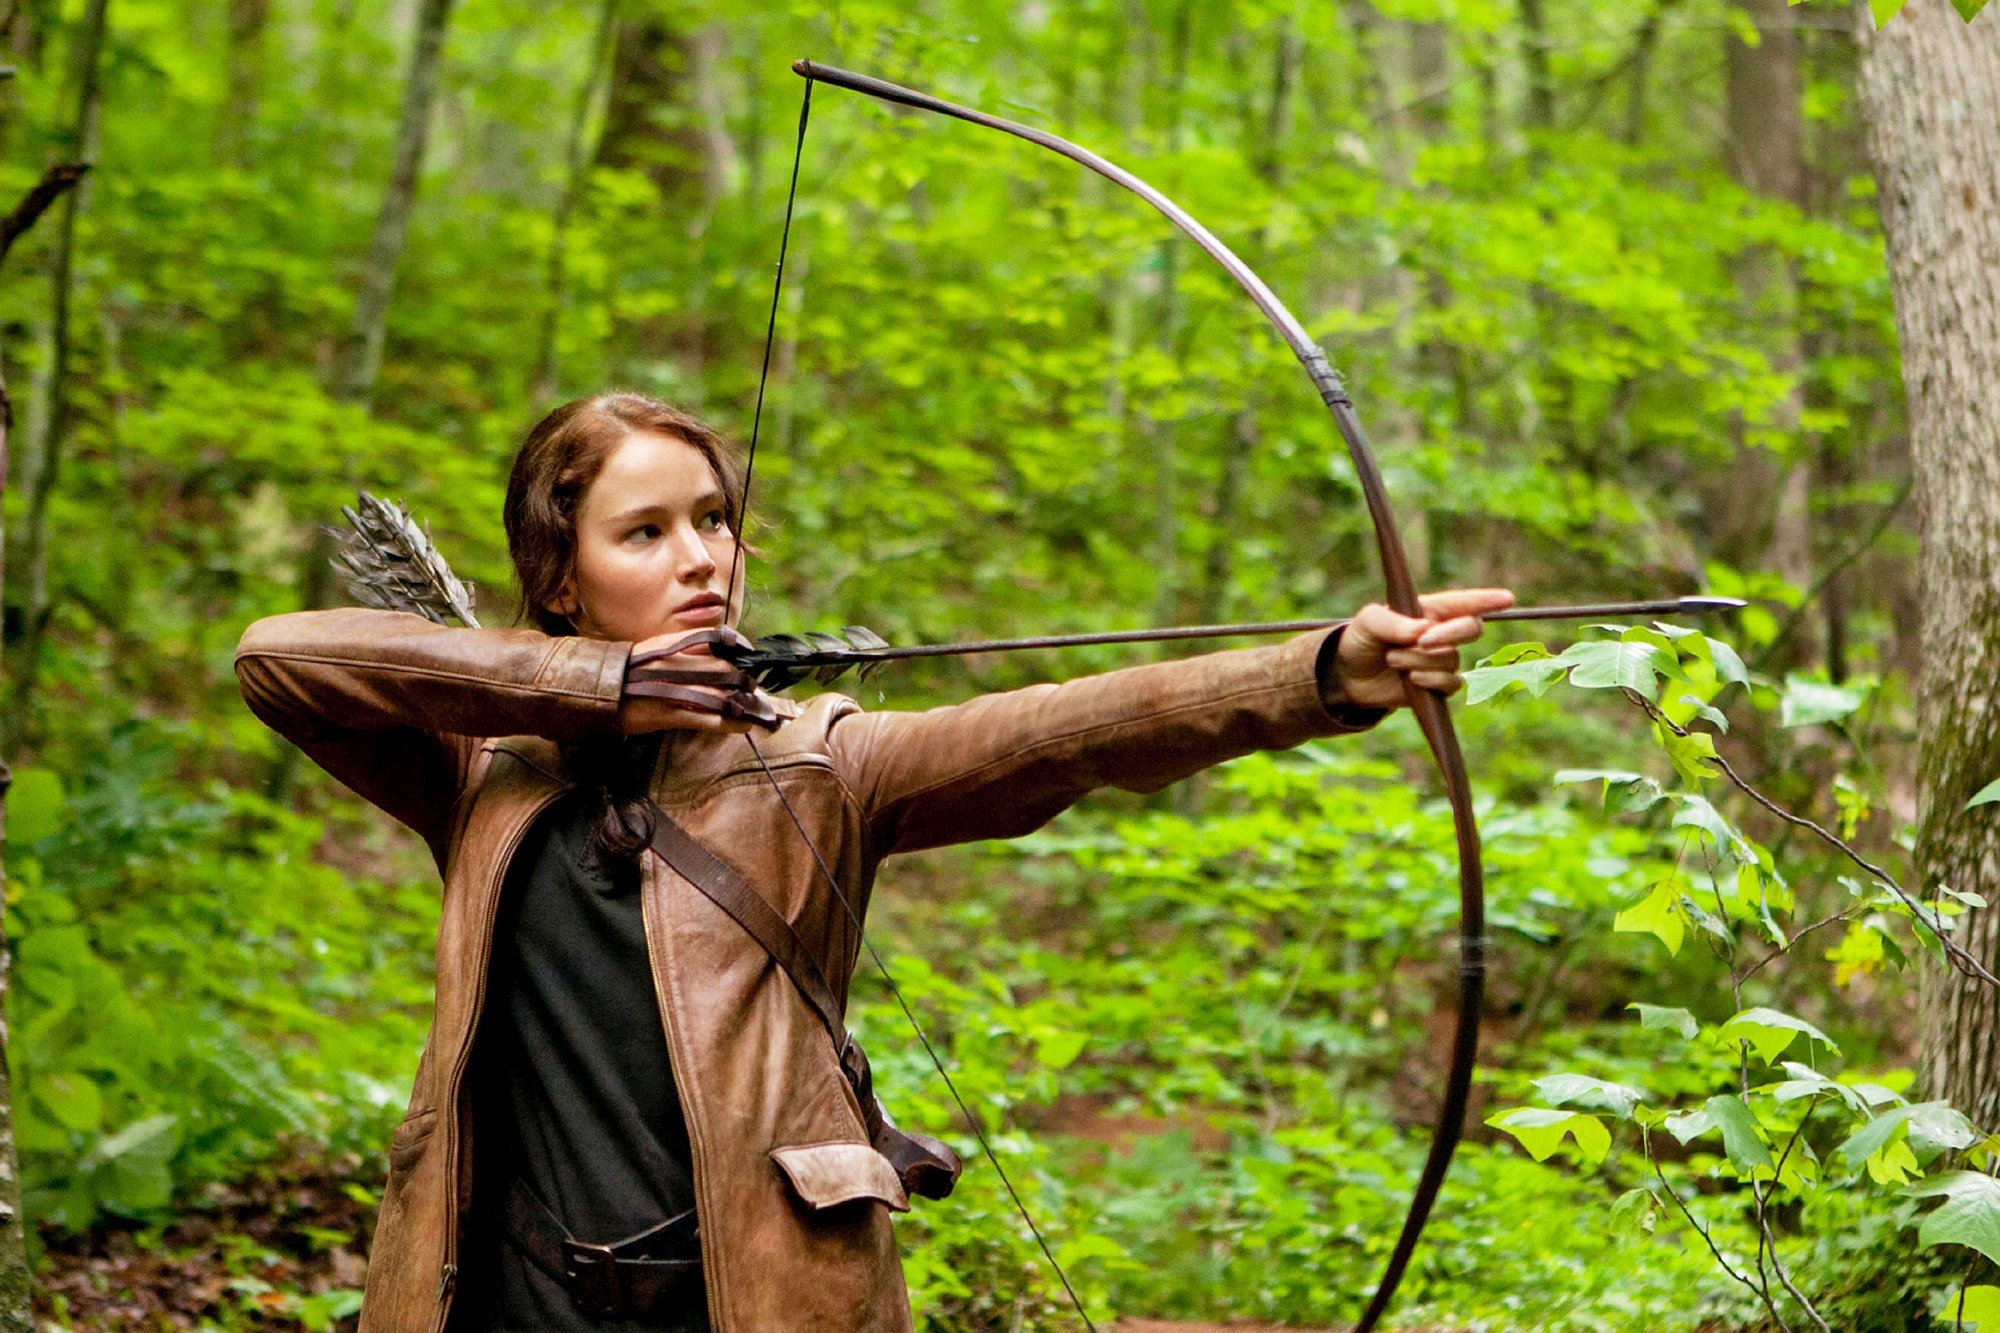 A imagem tem um fundo verde médio desfocado, que é uma floresta durante o dia, Katniss está em uma pequena clareira com arbustos rasteiros próximos. Ela se encontra em pé mais para a esquerda da imagem, com o corpo de frente para a câmera, com o rosto e o olhar sério virados para a direita, para onde ela mira uma flecha e o arco; a arma é simples e rústica, feitos em madeira. Katniss é uma mulher branca, magra, alta, de cabelo castanho levemente avermelhado. Ela veste uma, uma calça preta, coberta por uma blusa com tecido soltinho e um cinto também preto por cima, e se cobre com uma jaqueta de couro caramelo, transpassada por uma tira de couro tira de couro marrom, que segura o suporte de suas flechas nas costas. Na mão direita, a que apoia a flecha, há uma pequena proteção de tiras de couro.